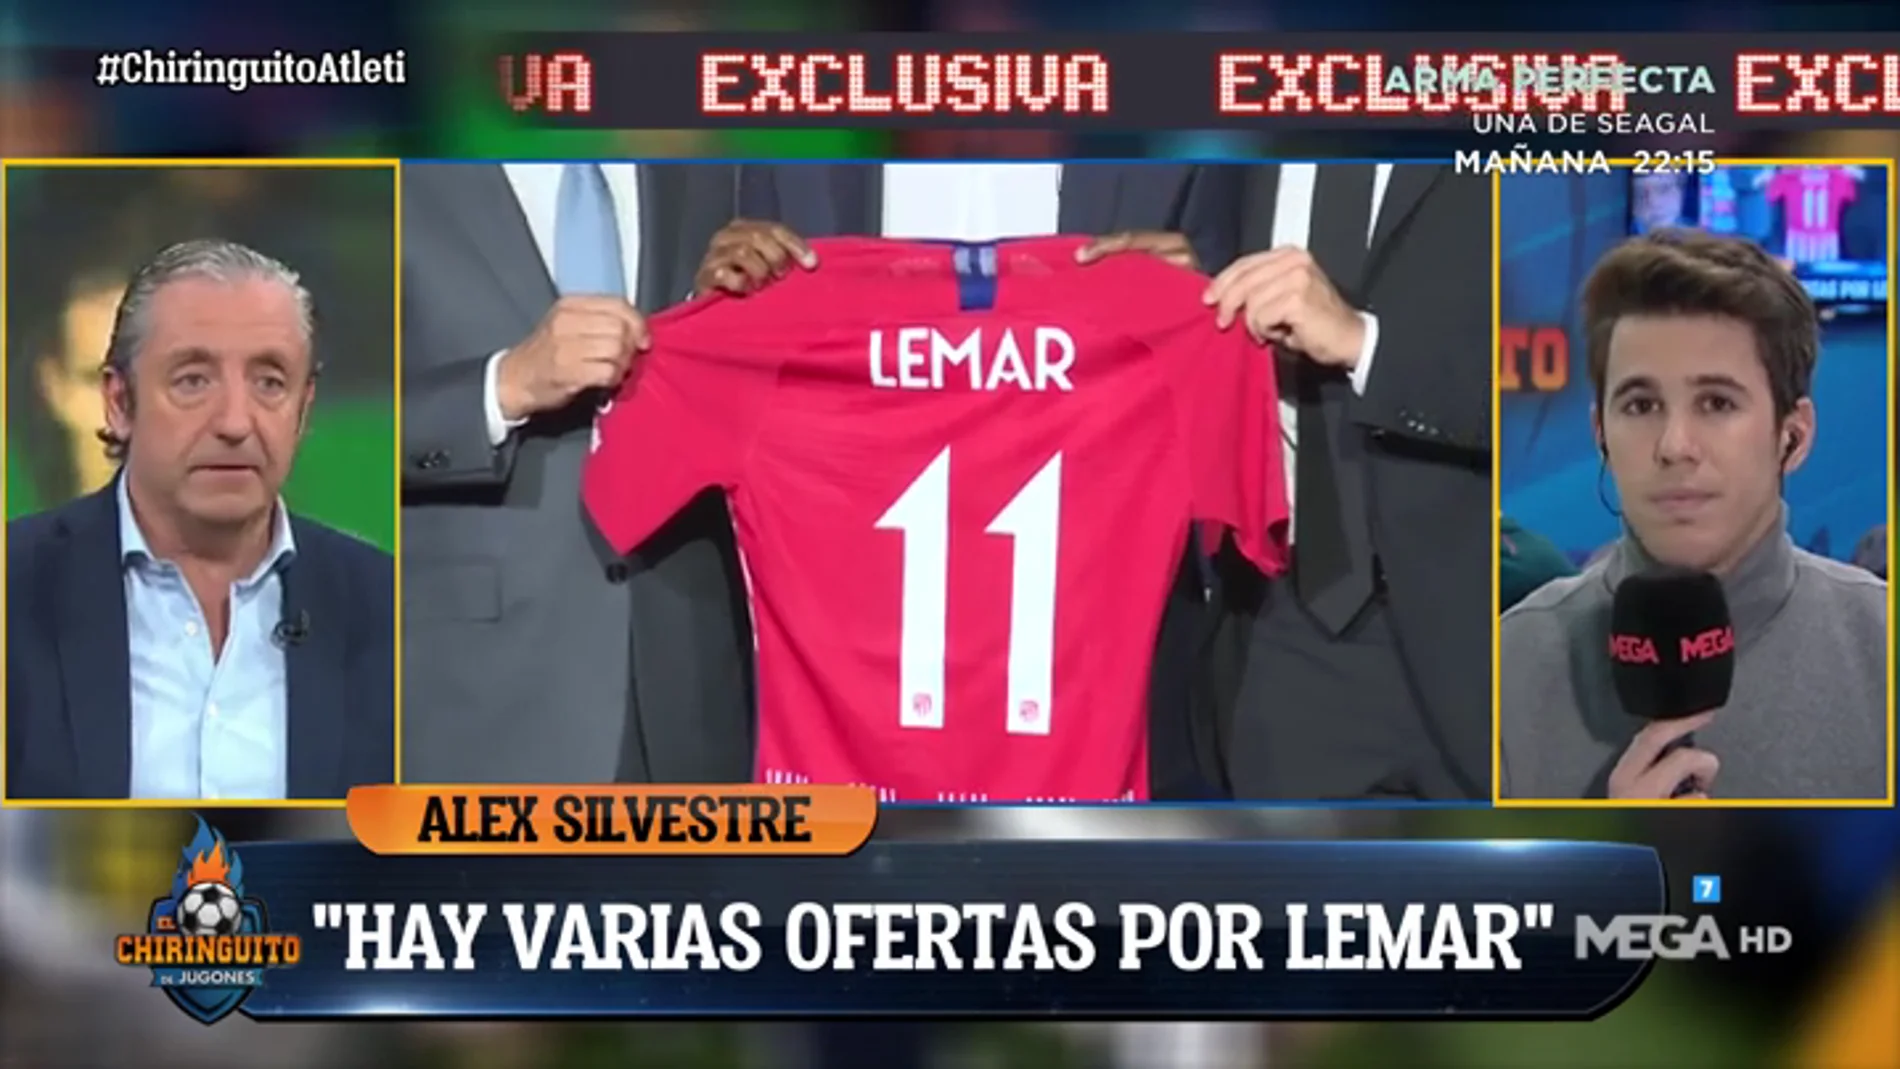 Álex Silvestre: "Hay ofertas por Lemar pero no lo suficientemente atractivas"